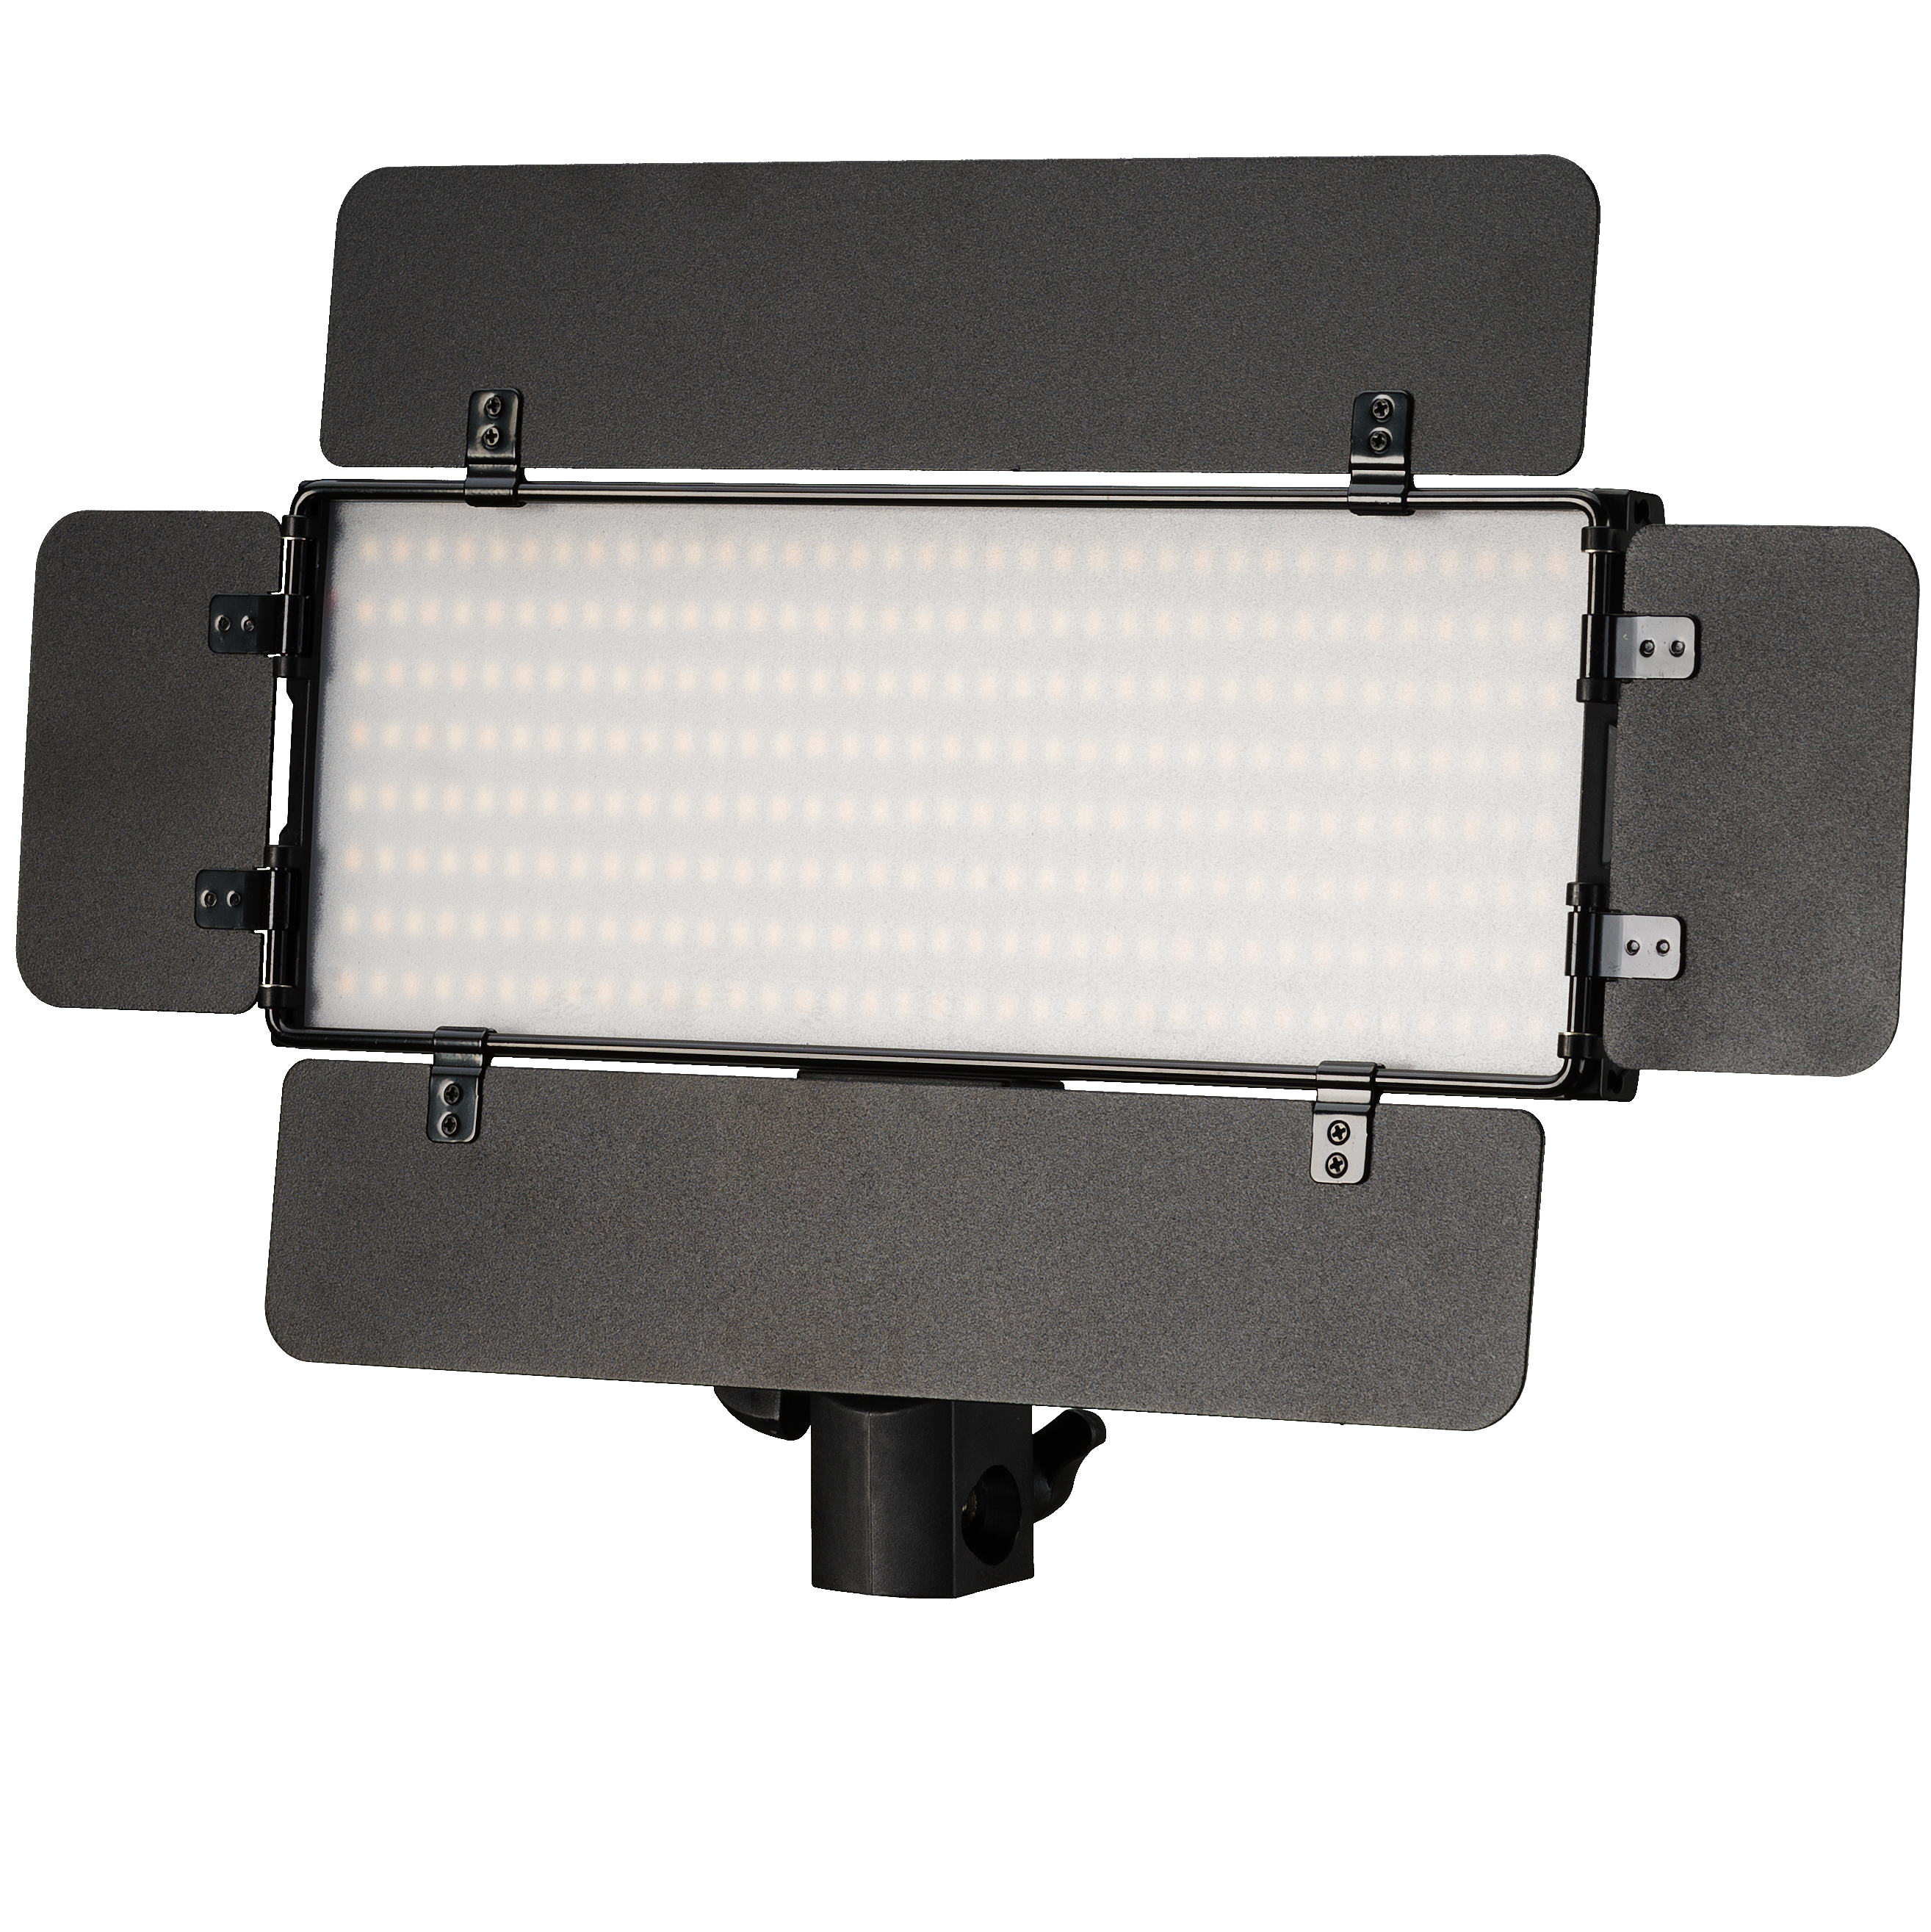 Conjunto de Antorchas de Vídeo BRESSER PT 30B-II LED bicolor con Viseras, Baterías recargables, Fuente de Alimentación, Mando a Distancia y Estuche